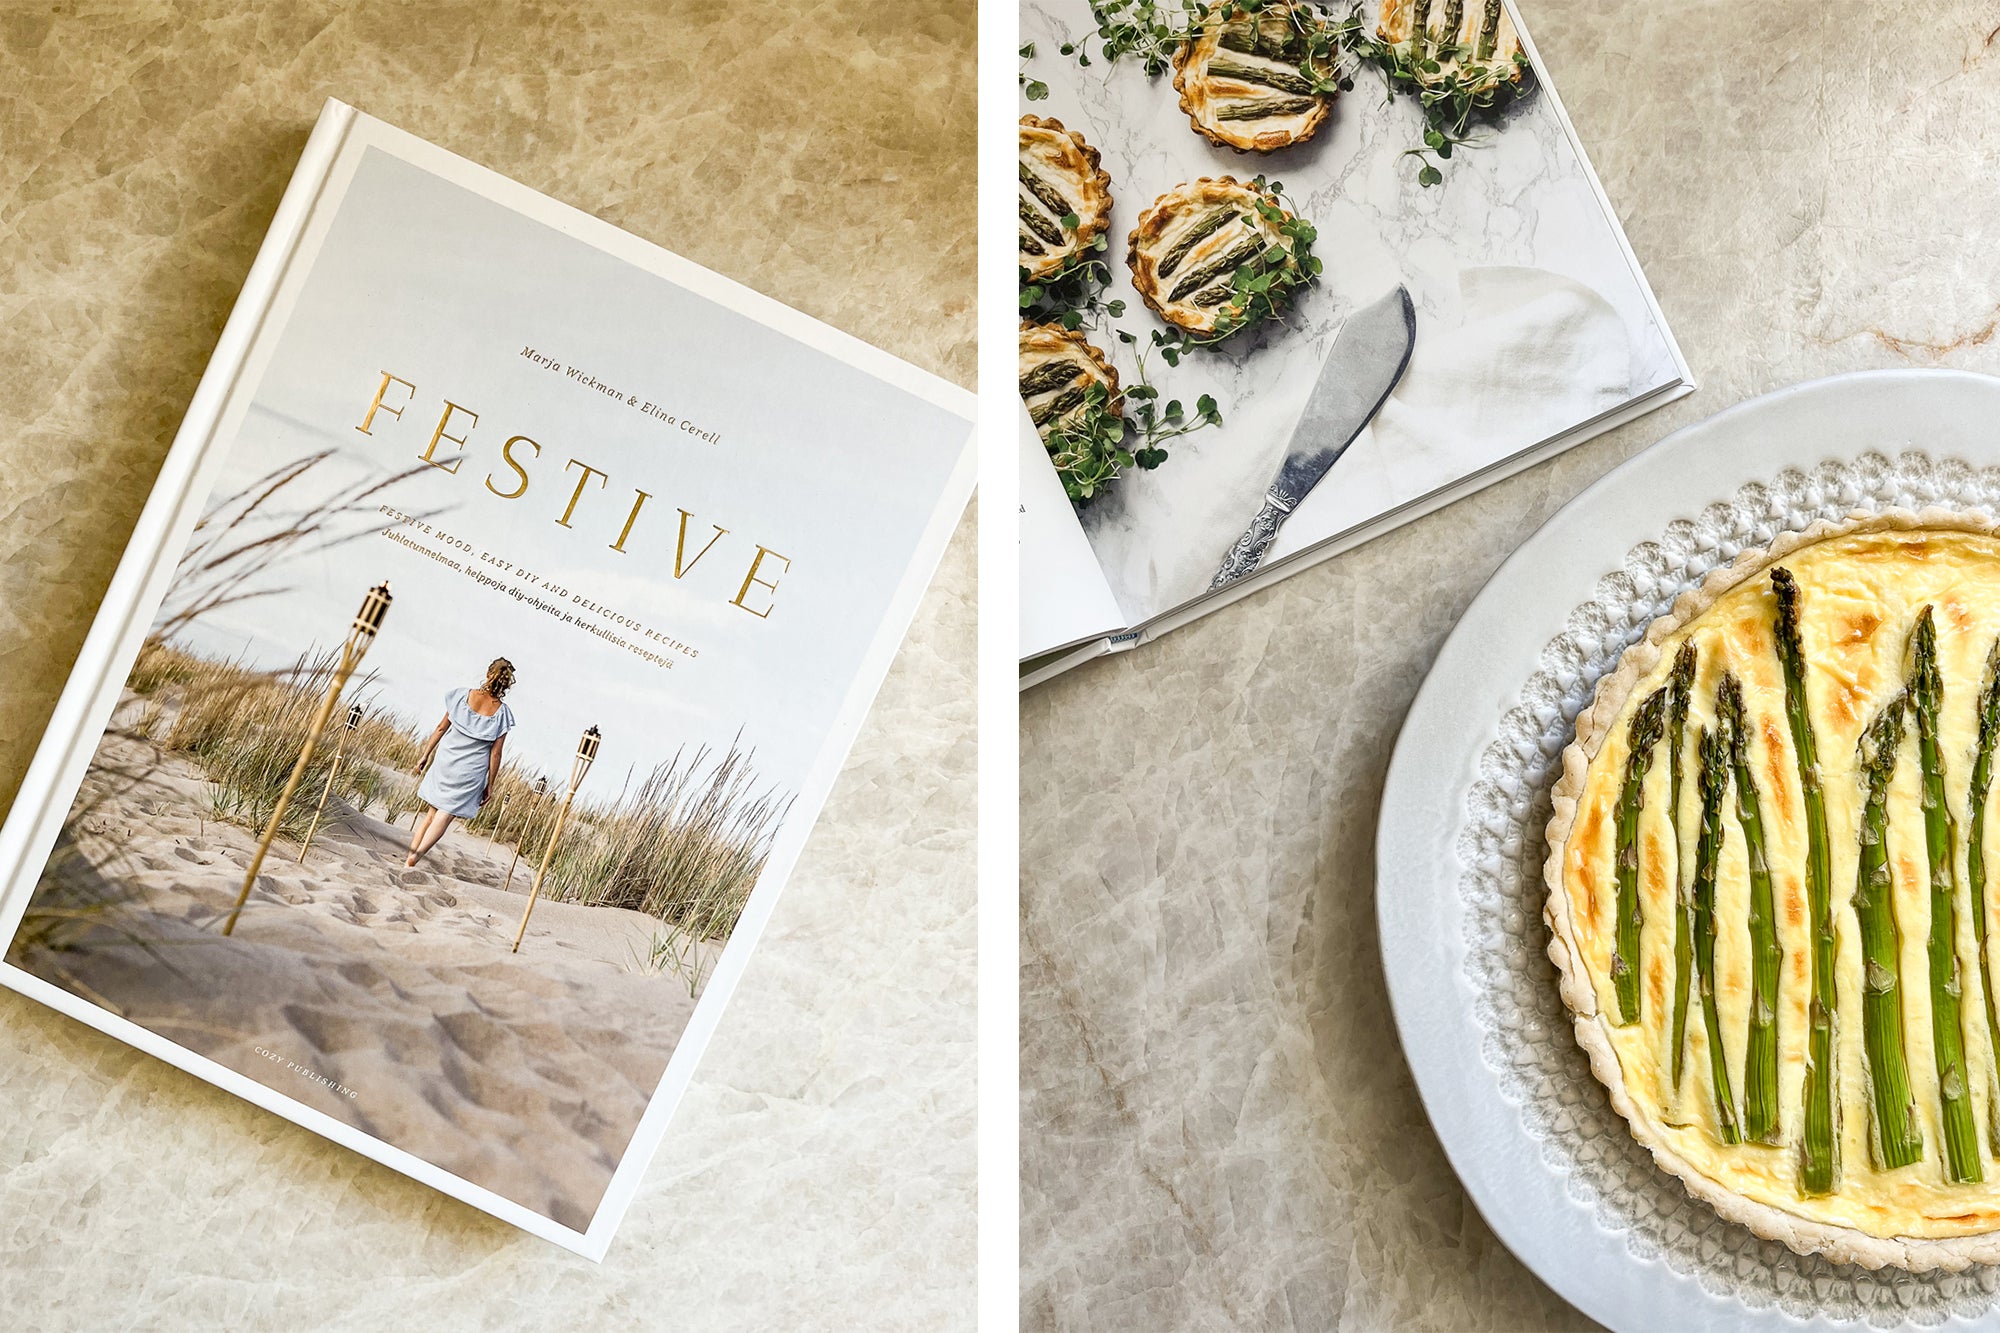 Festive Cookbook, Asparagus Tart